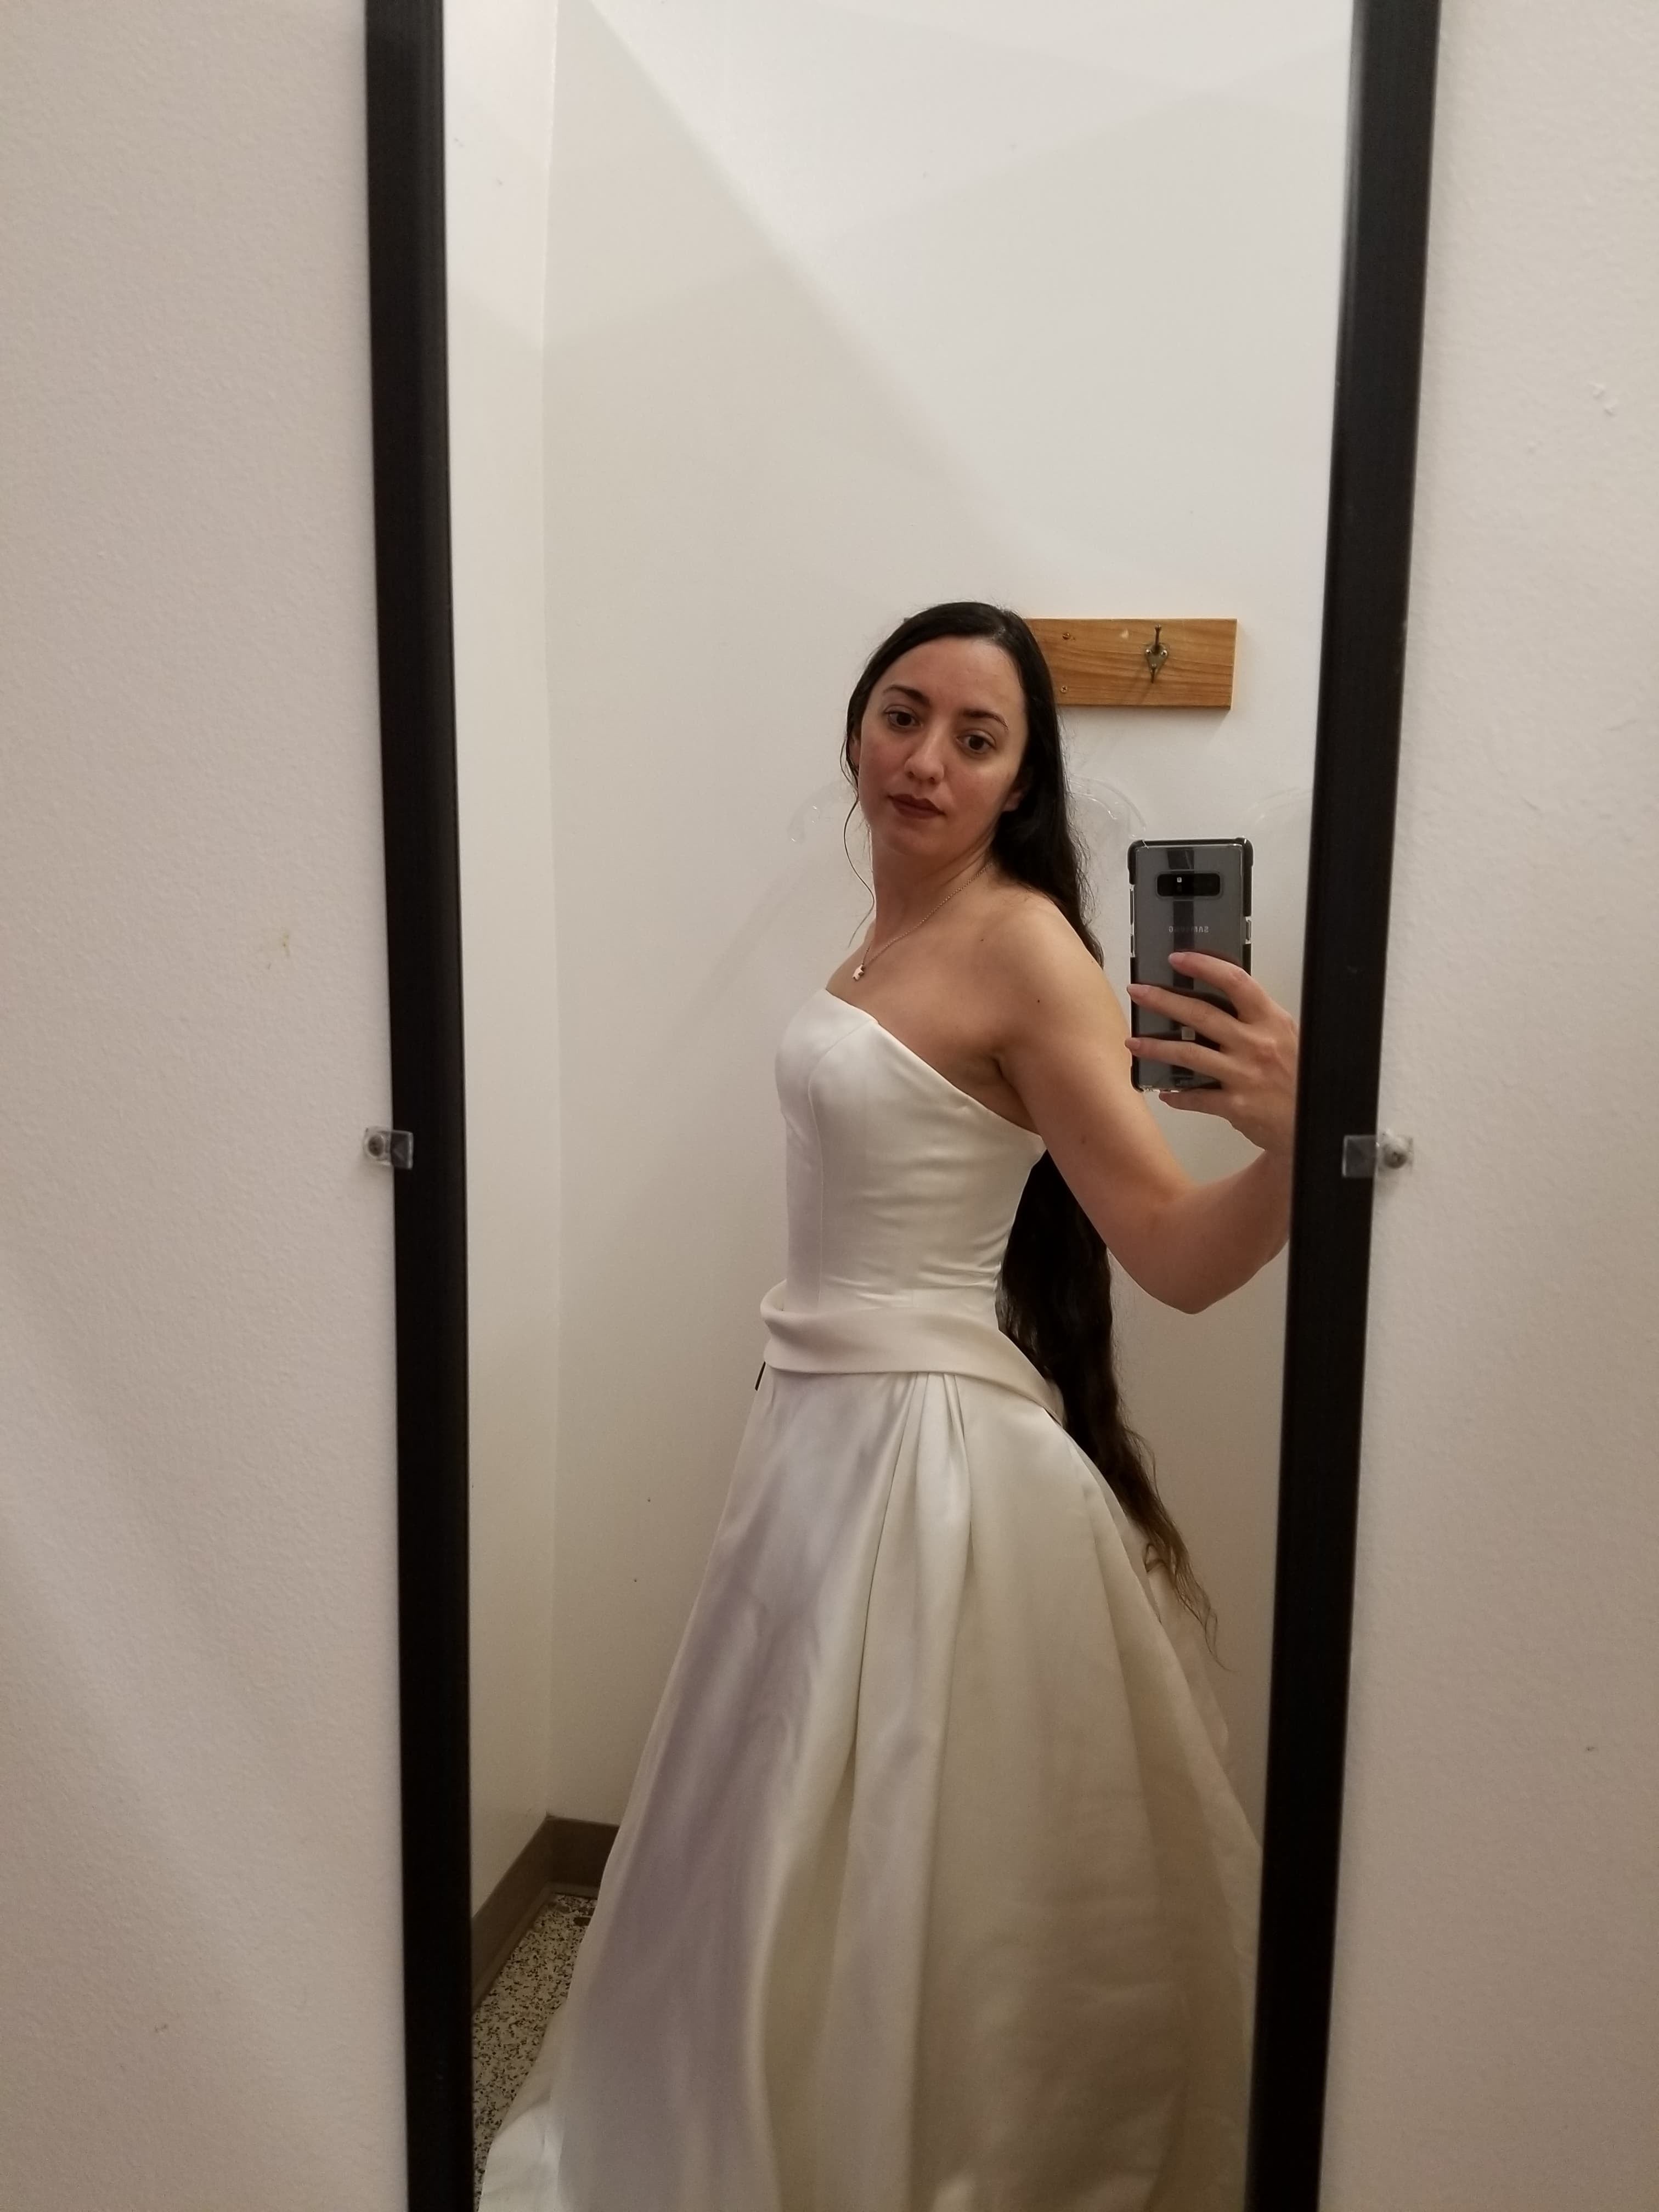 La robe de mariée d'une utilisatrice de Reddit téléchargée sur la plateforme le 28 février 2020 | Source : Reddit/ThriftStoreHauls